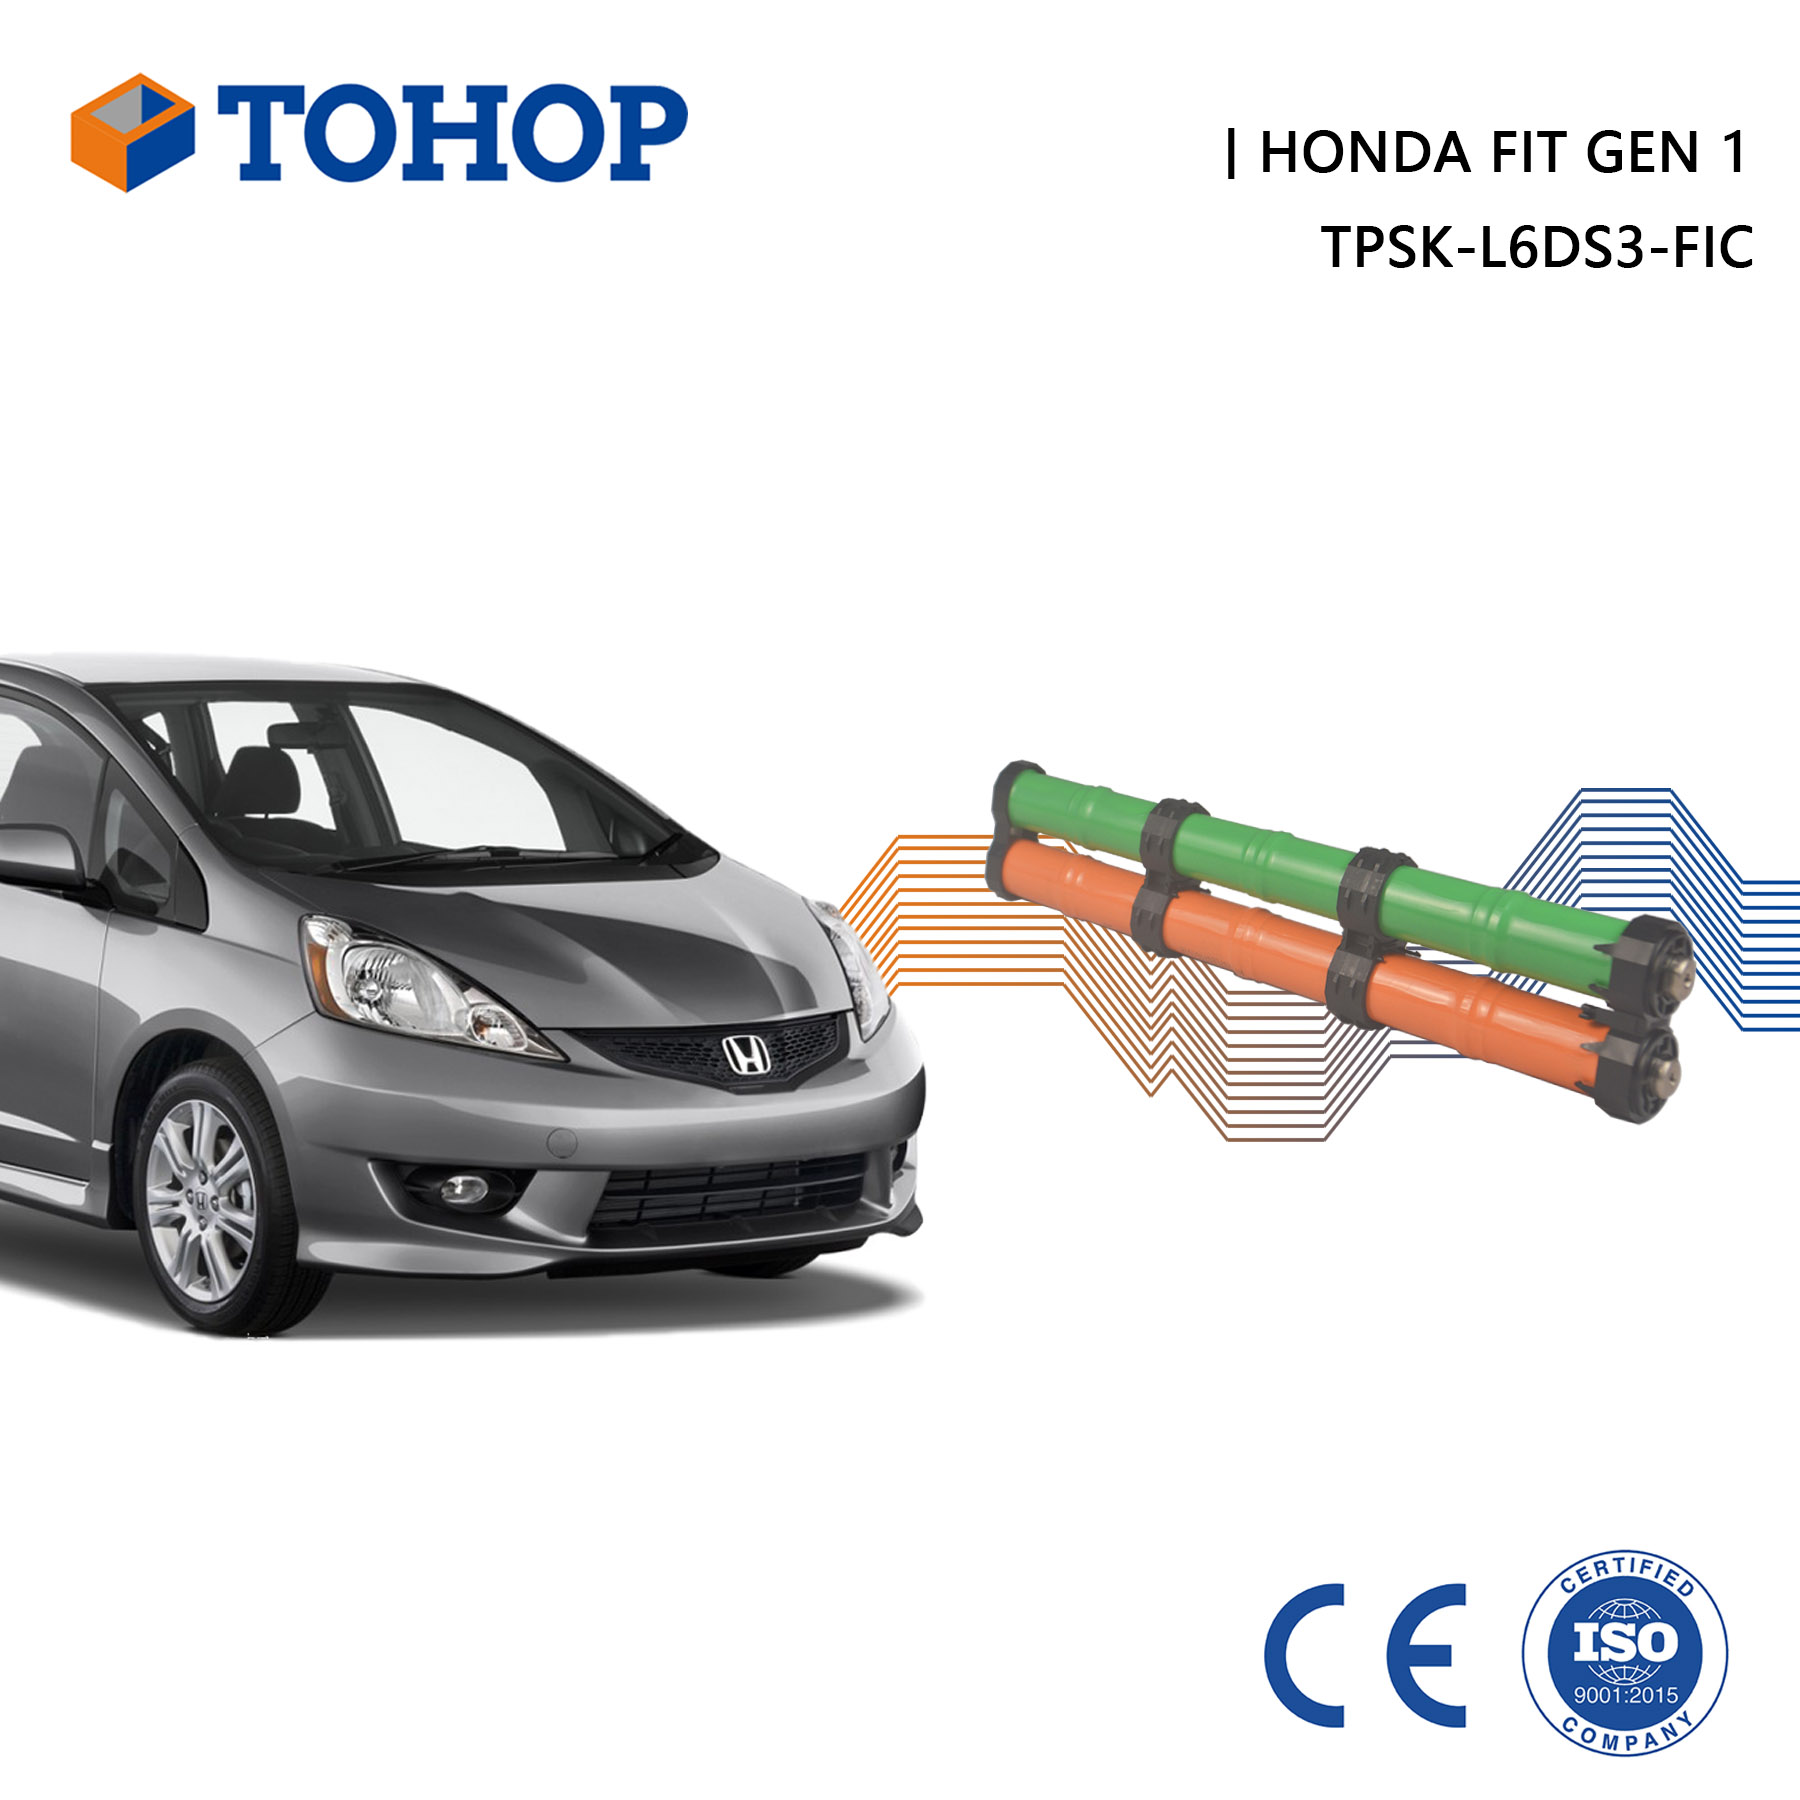 Celda de batería Nimh de repuesto del fabricante de la batería híbrida Honda Fit Gen 1